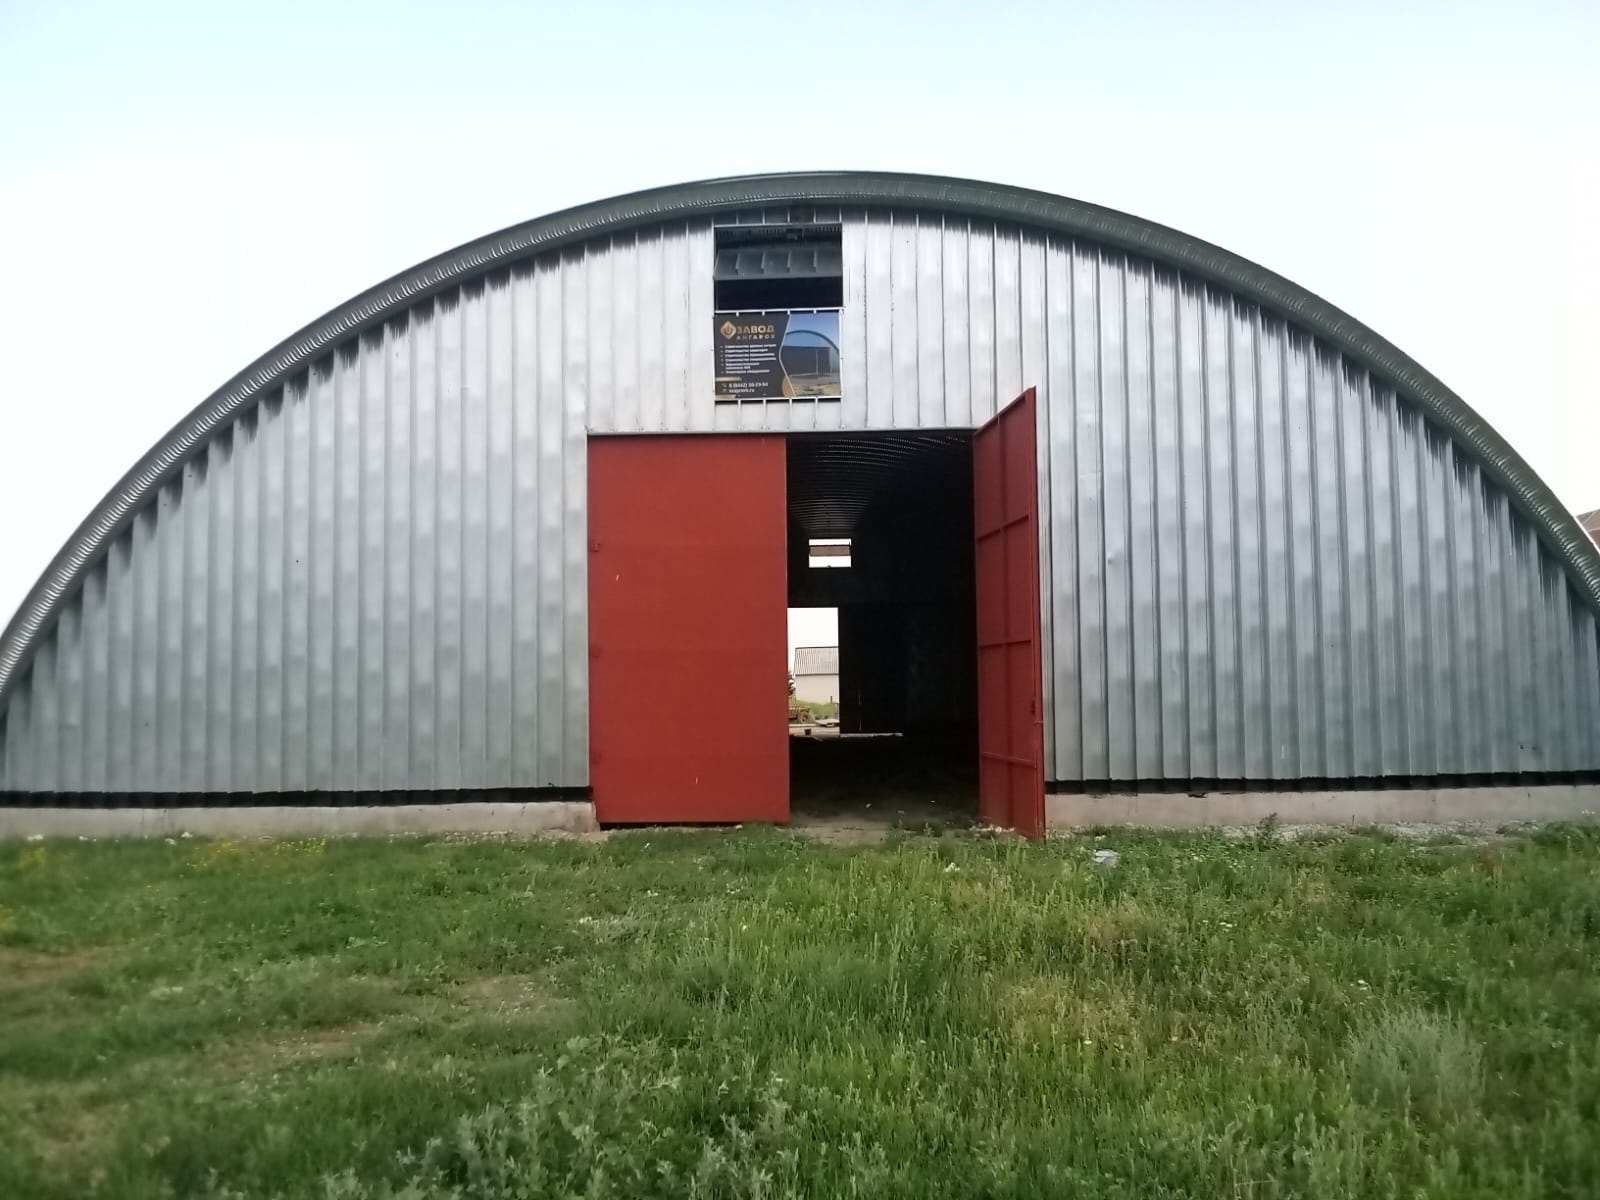 Строительство бескаркасных арочных ангаров в Саратове